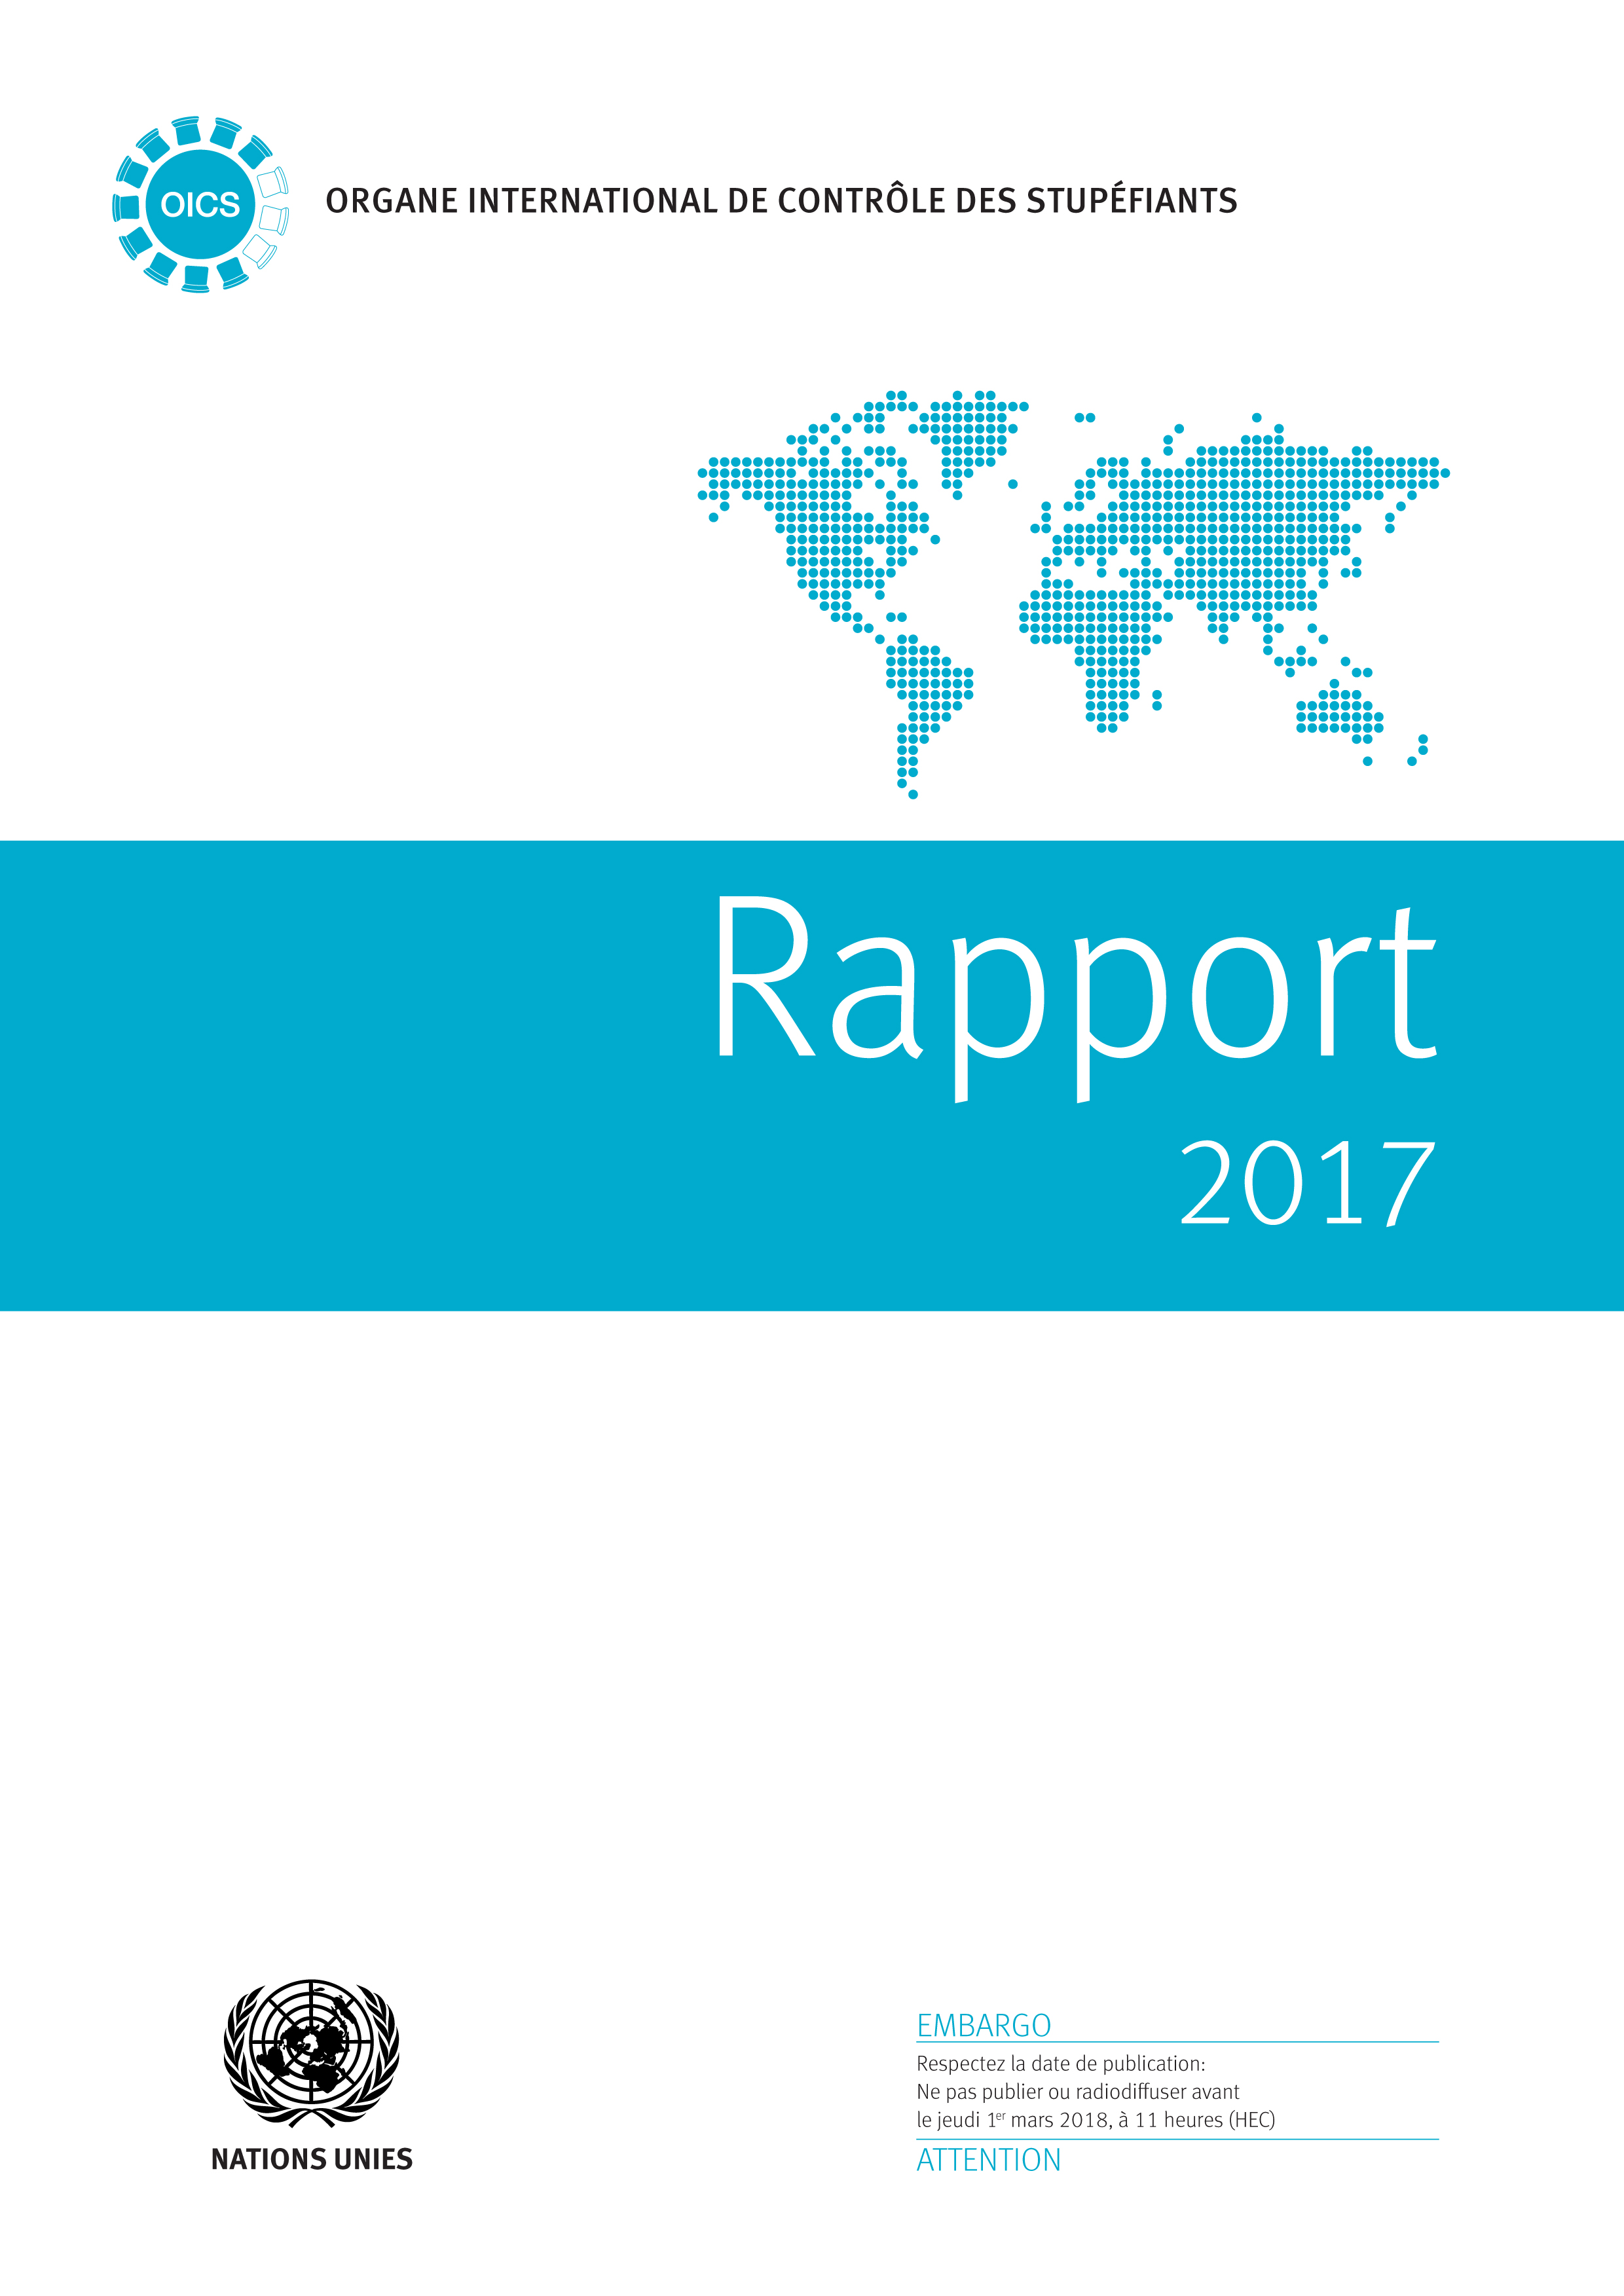 image of Rapport de l'Organe international de contrôle des stupéfiants pour 2017